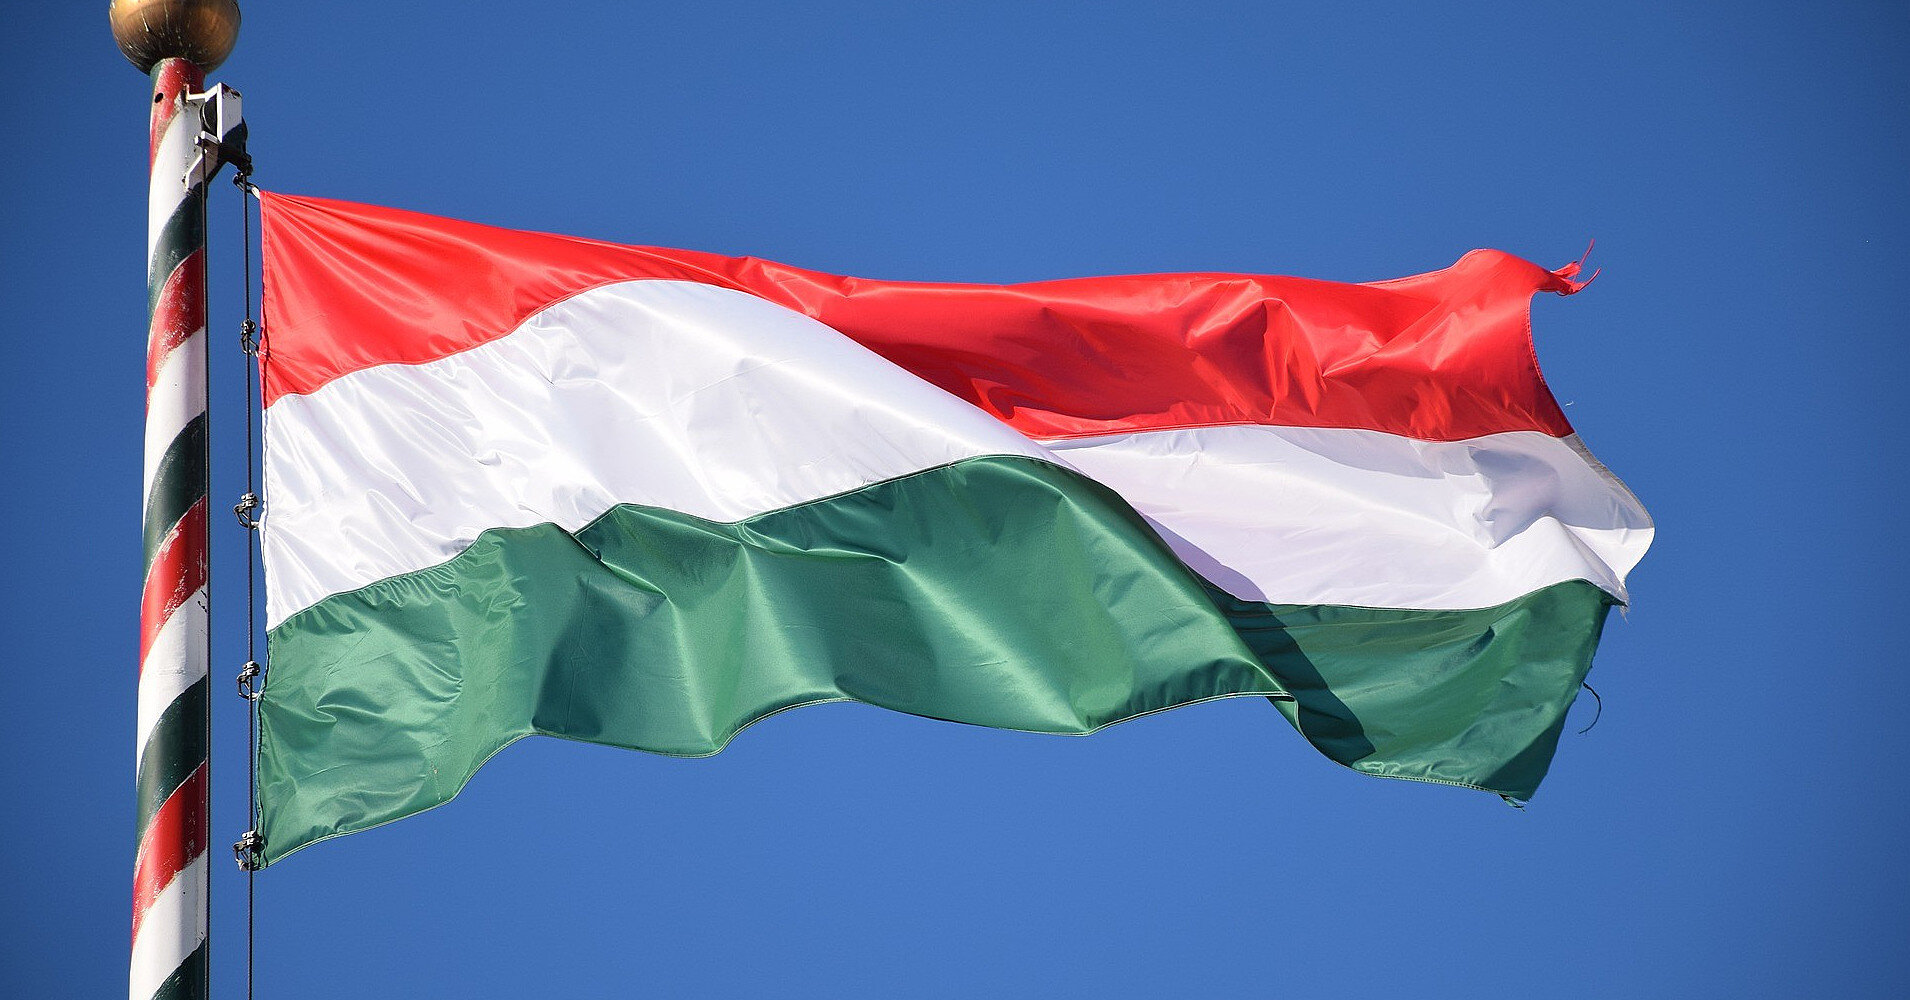 НАТО обмежило обмін інформацією з Угорщиною через позицію її влади - ЗМІ